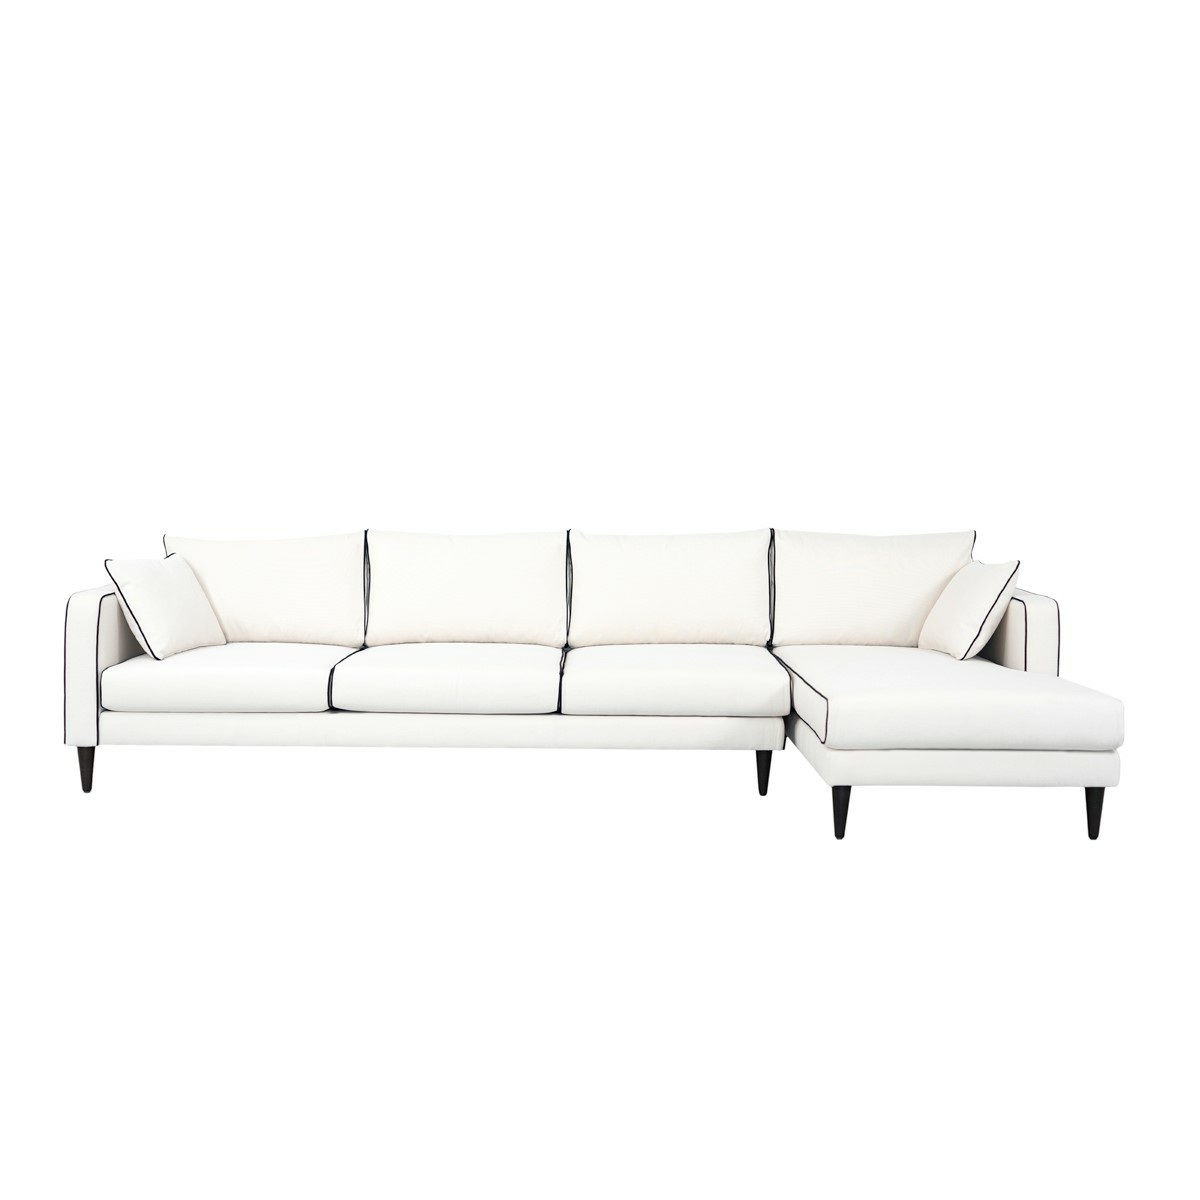 Noa corner sofa - Right angle, L300 x P150 x H75 cm - Cotton - image 1